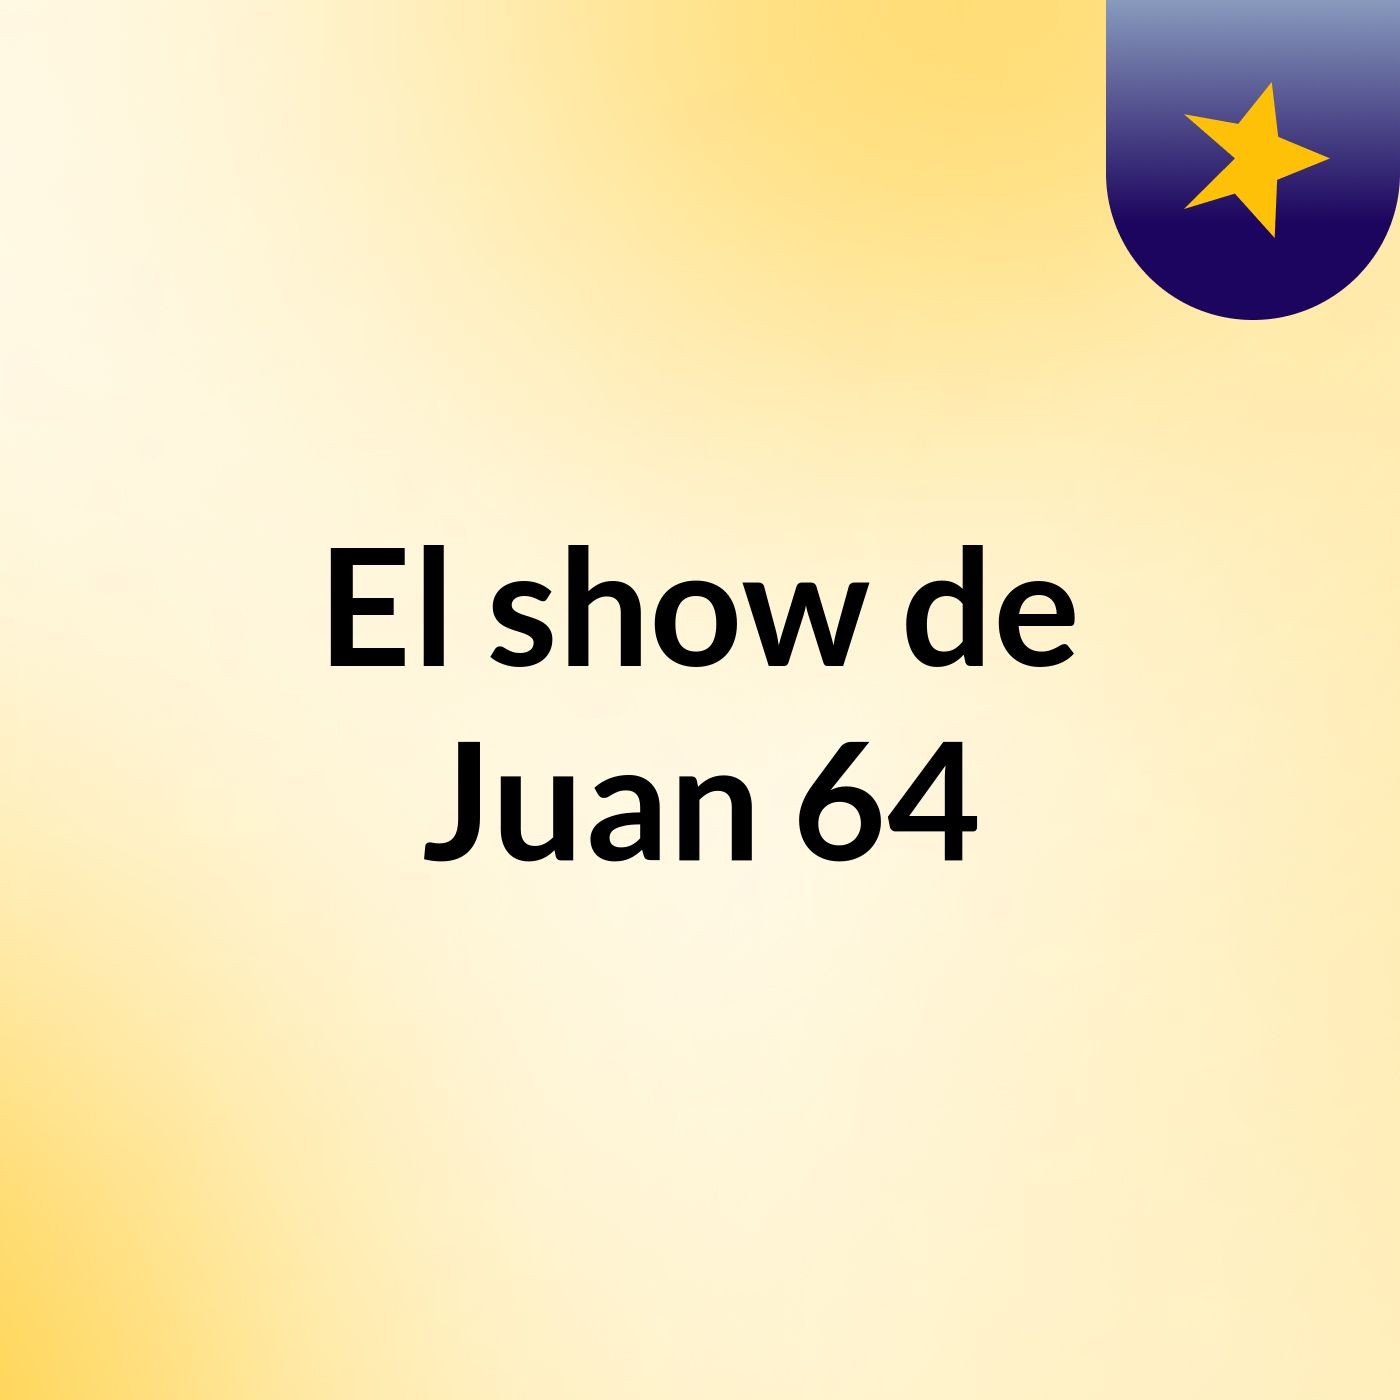 El show de Juan 64